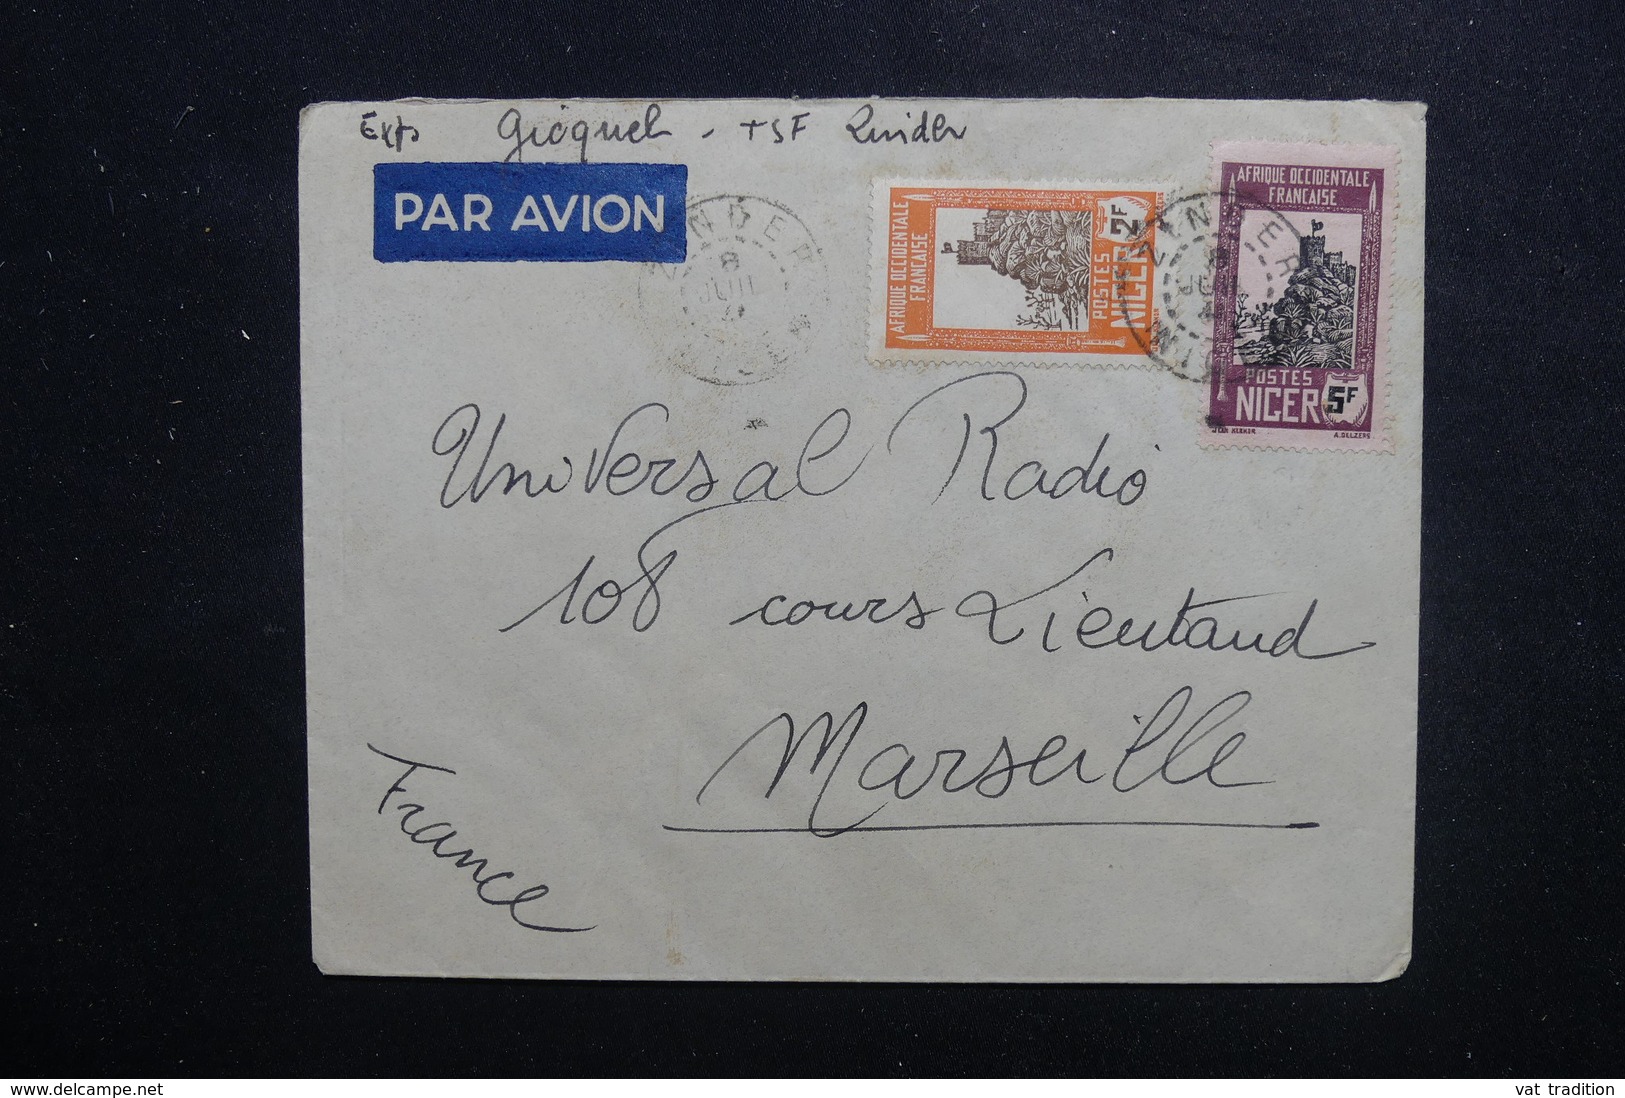 NIGER - Enveloppe De Zinder Pour La France , Affranchissement Plaisant - L 49441 - Covers & Documents